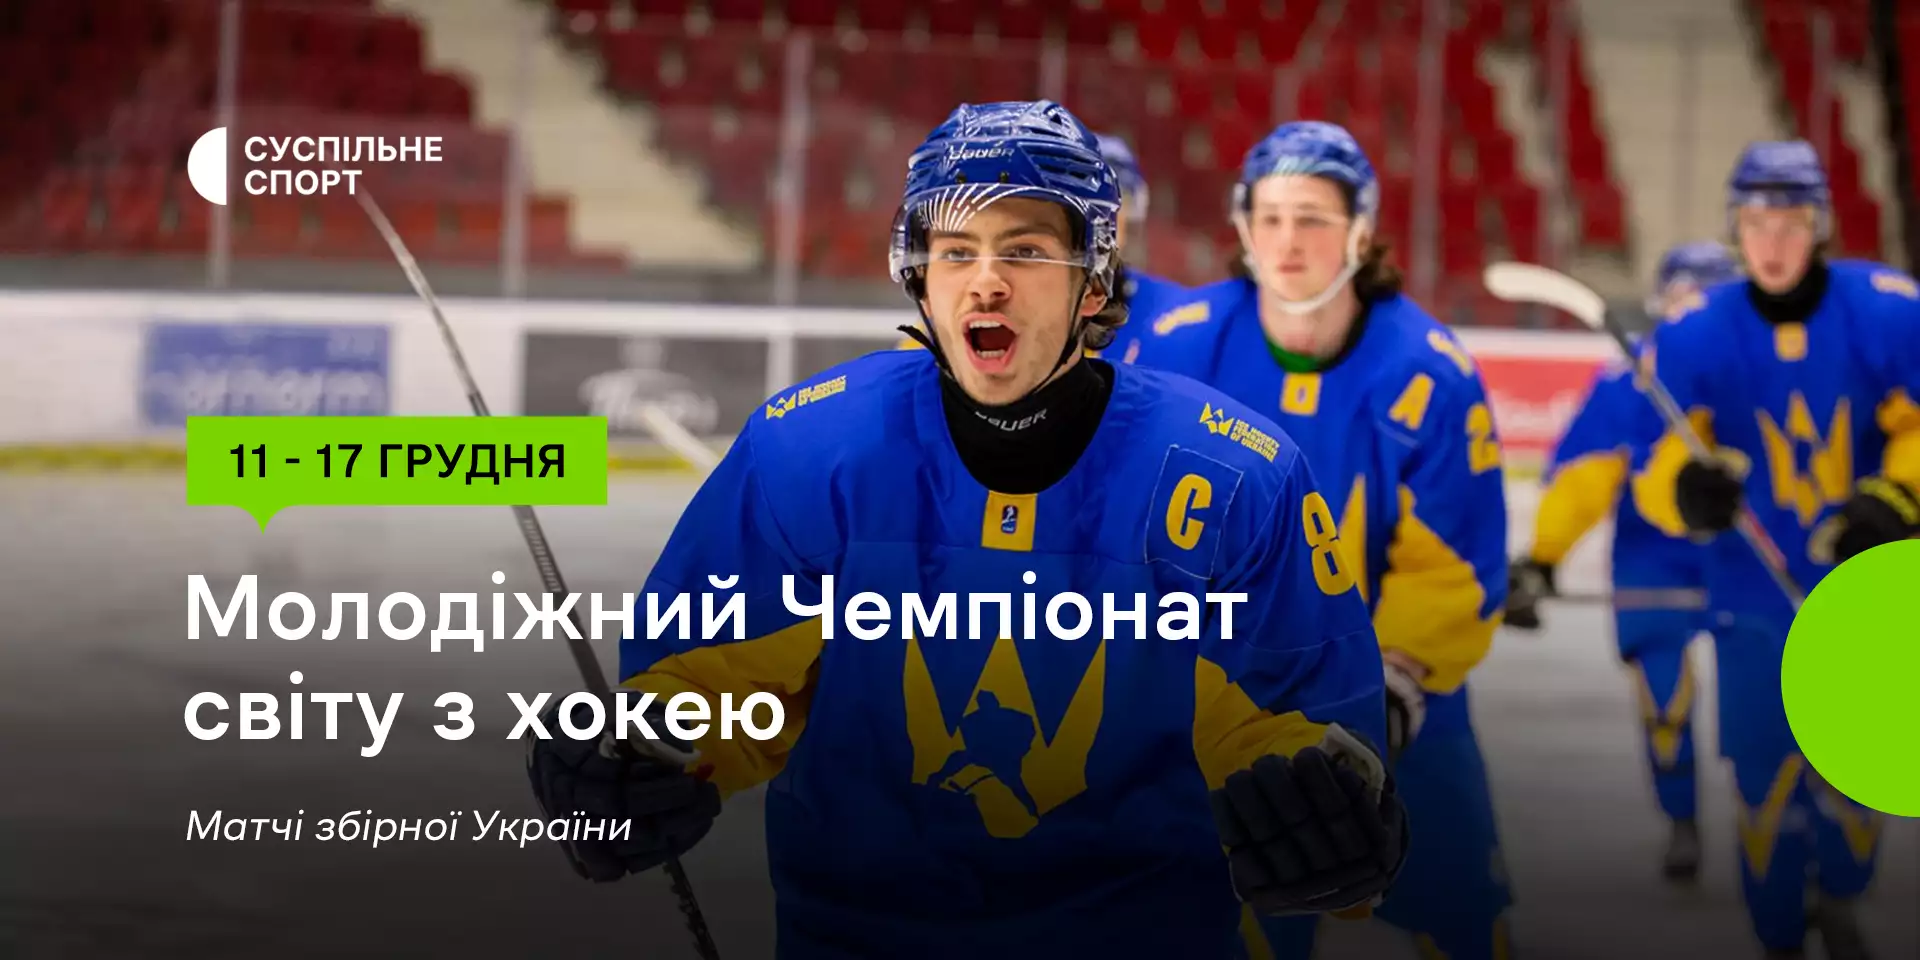 «Суспільне Спорт» транслює матчі молодіжної збірної України на Чемпіонаті світу з хокею